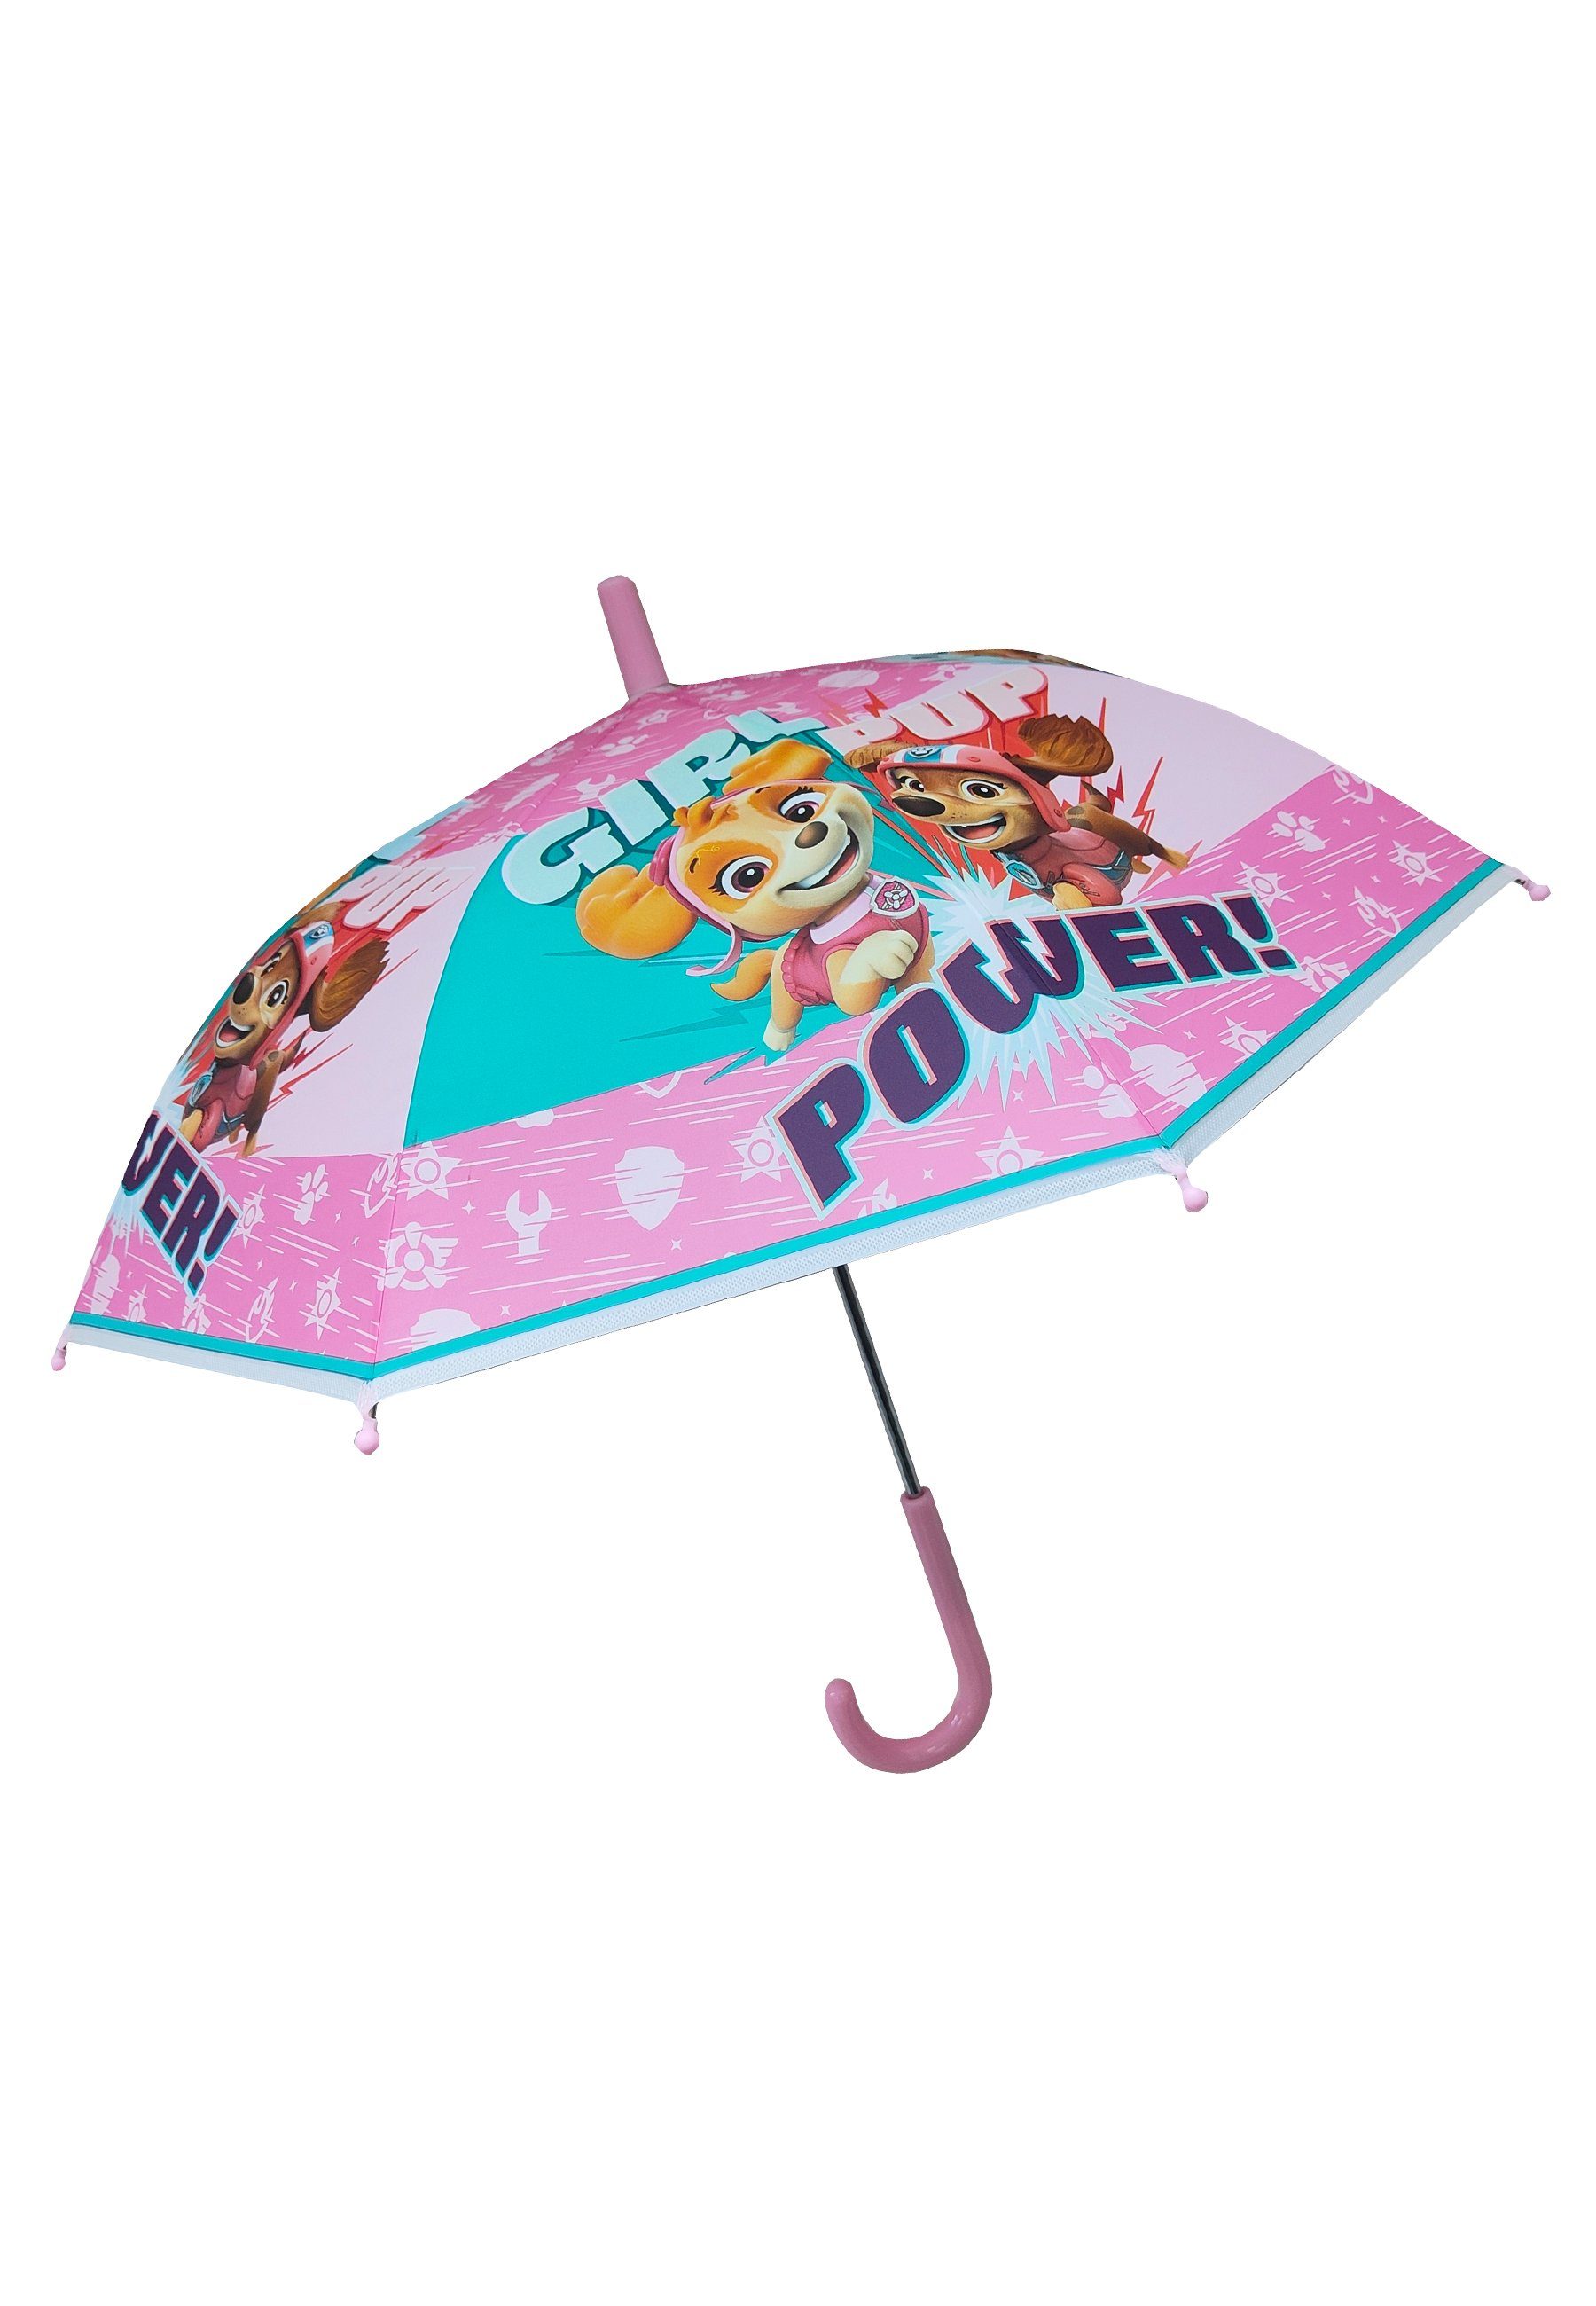 Stockregenschirm Regenschirm PATROL Stock-Schirm Mädchen Kinder Skye PAW